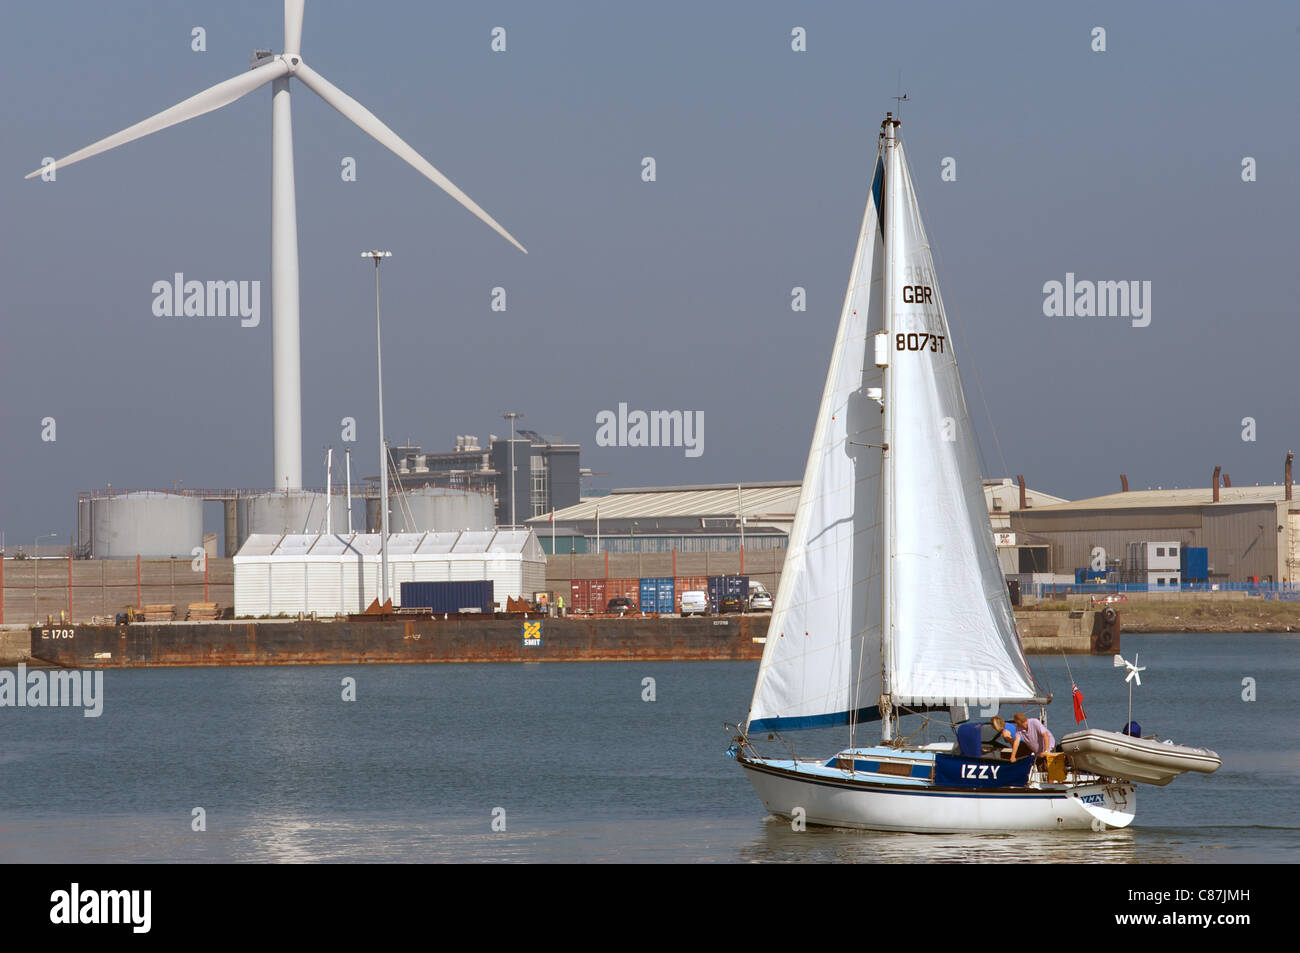 Wind turbine and yacht, Lowestoft, Suffolk, UK. Stock Photo